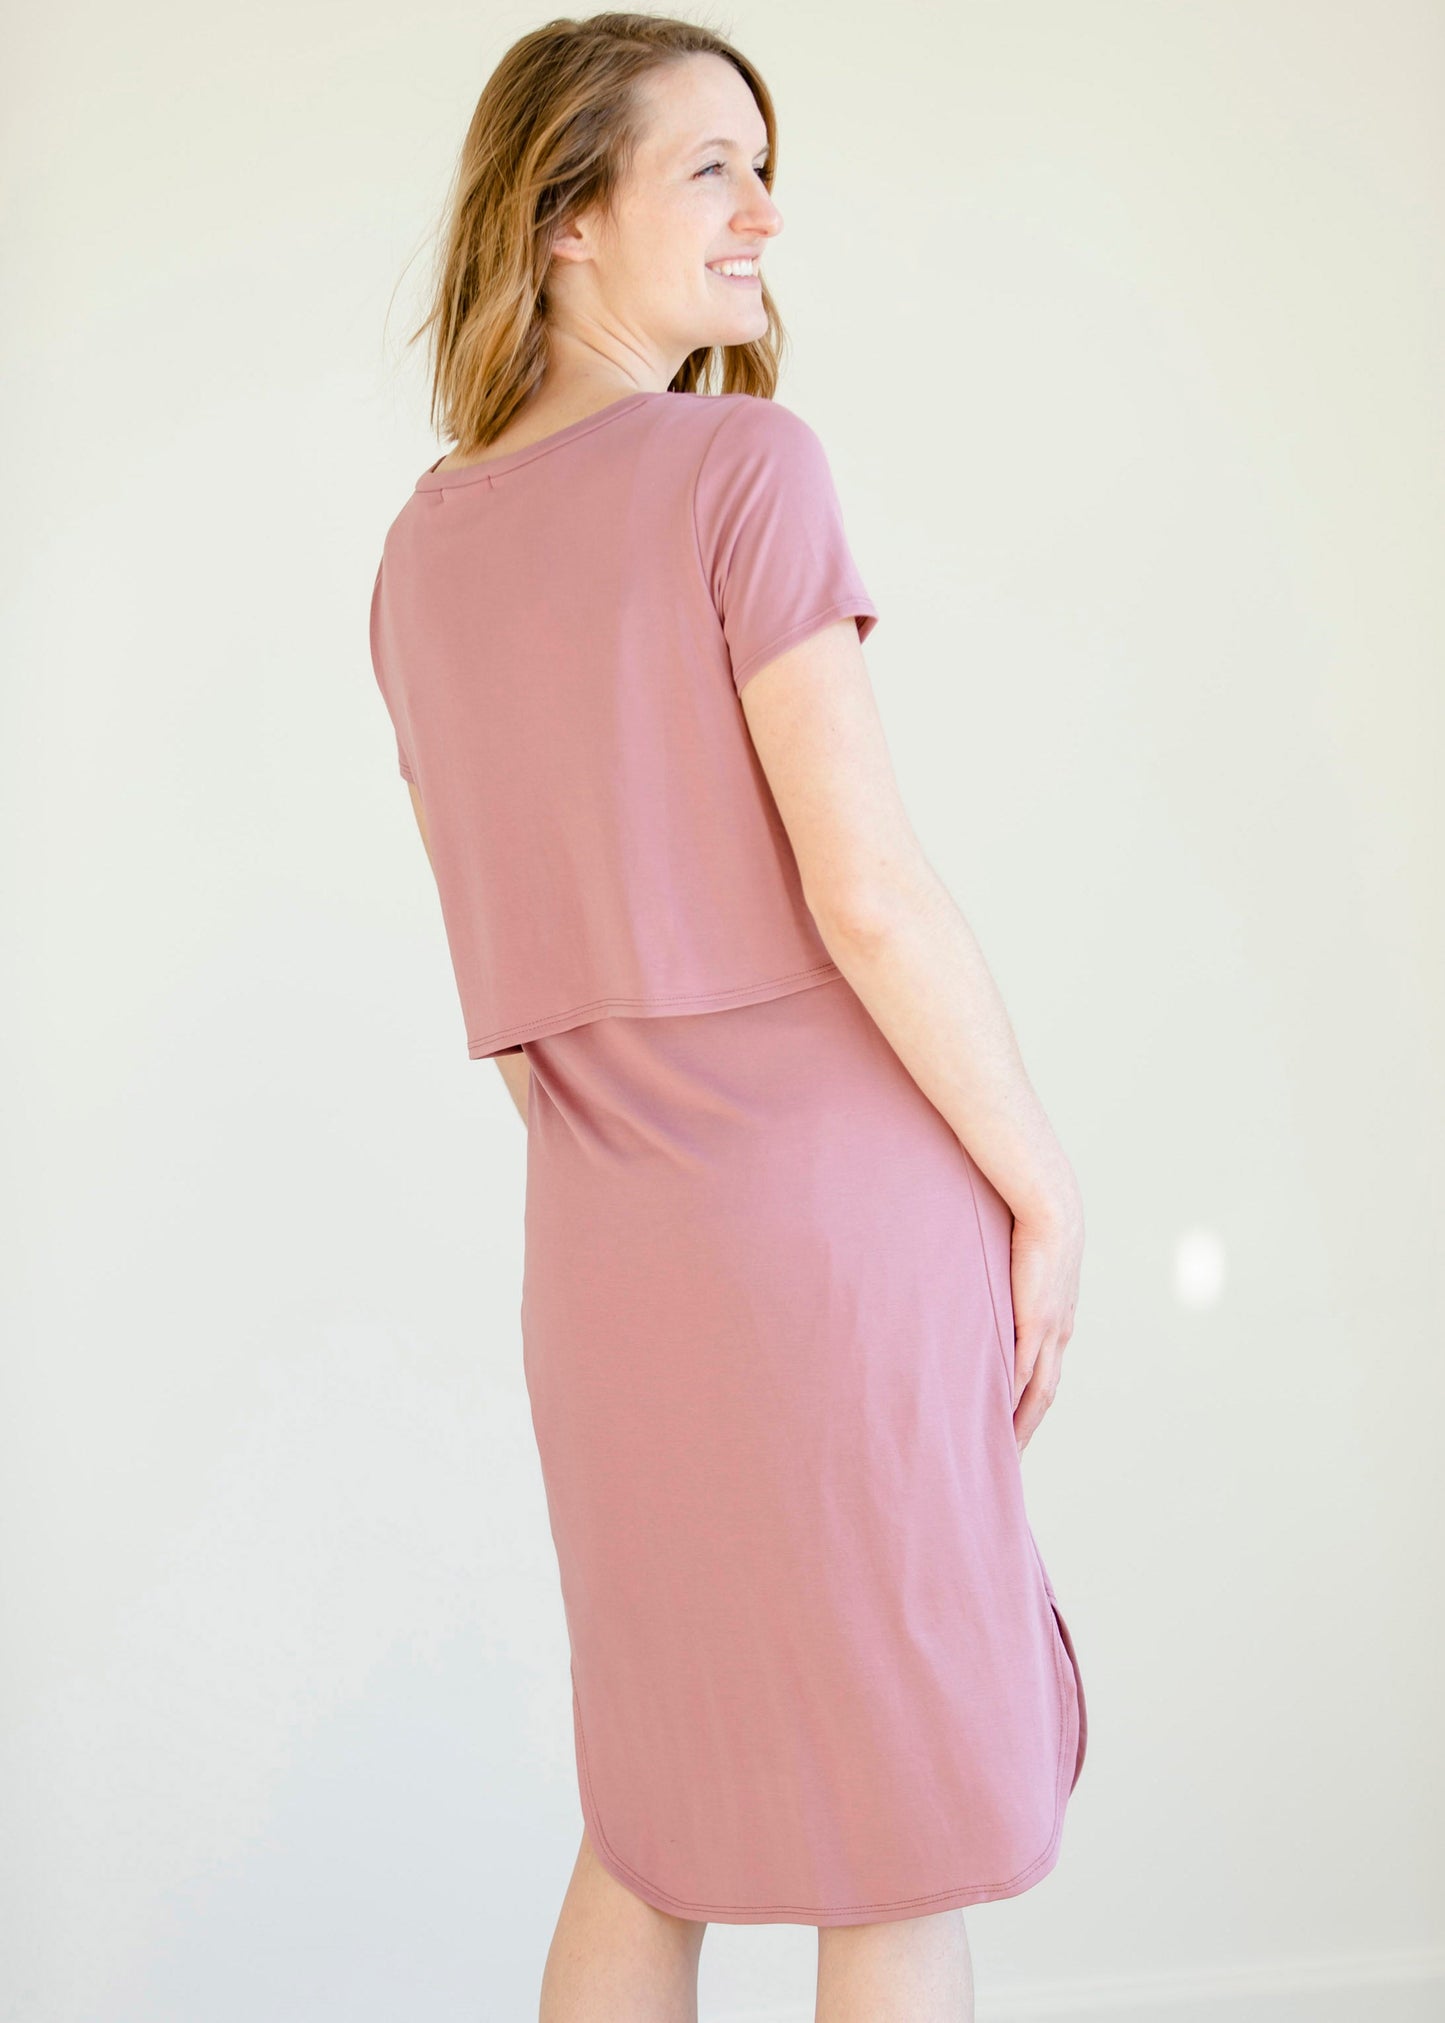 Mauve Front Knot Midi Dress - FINAL SALE Dresses